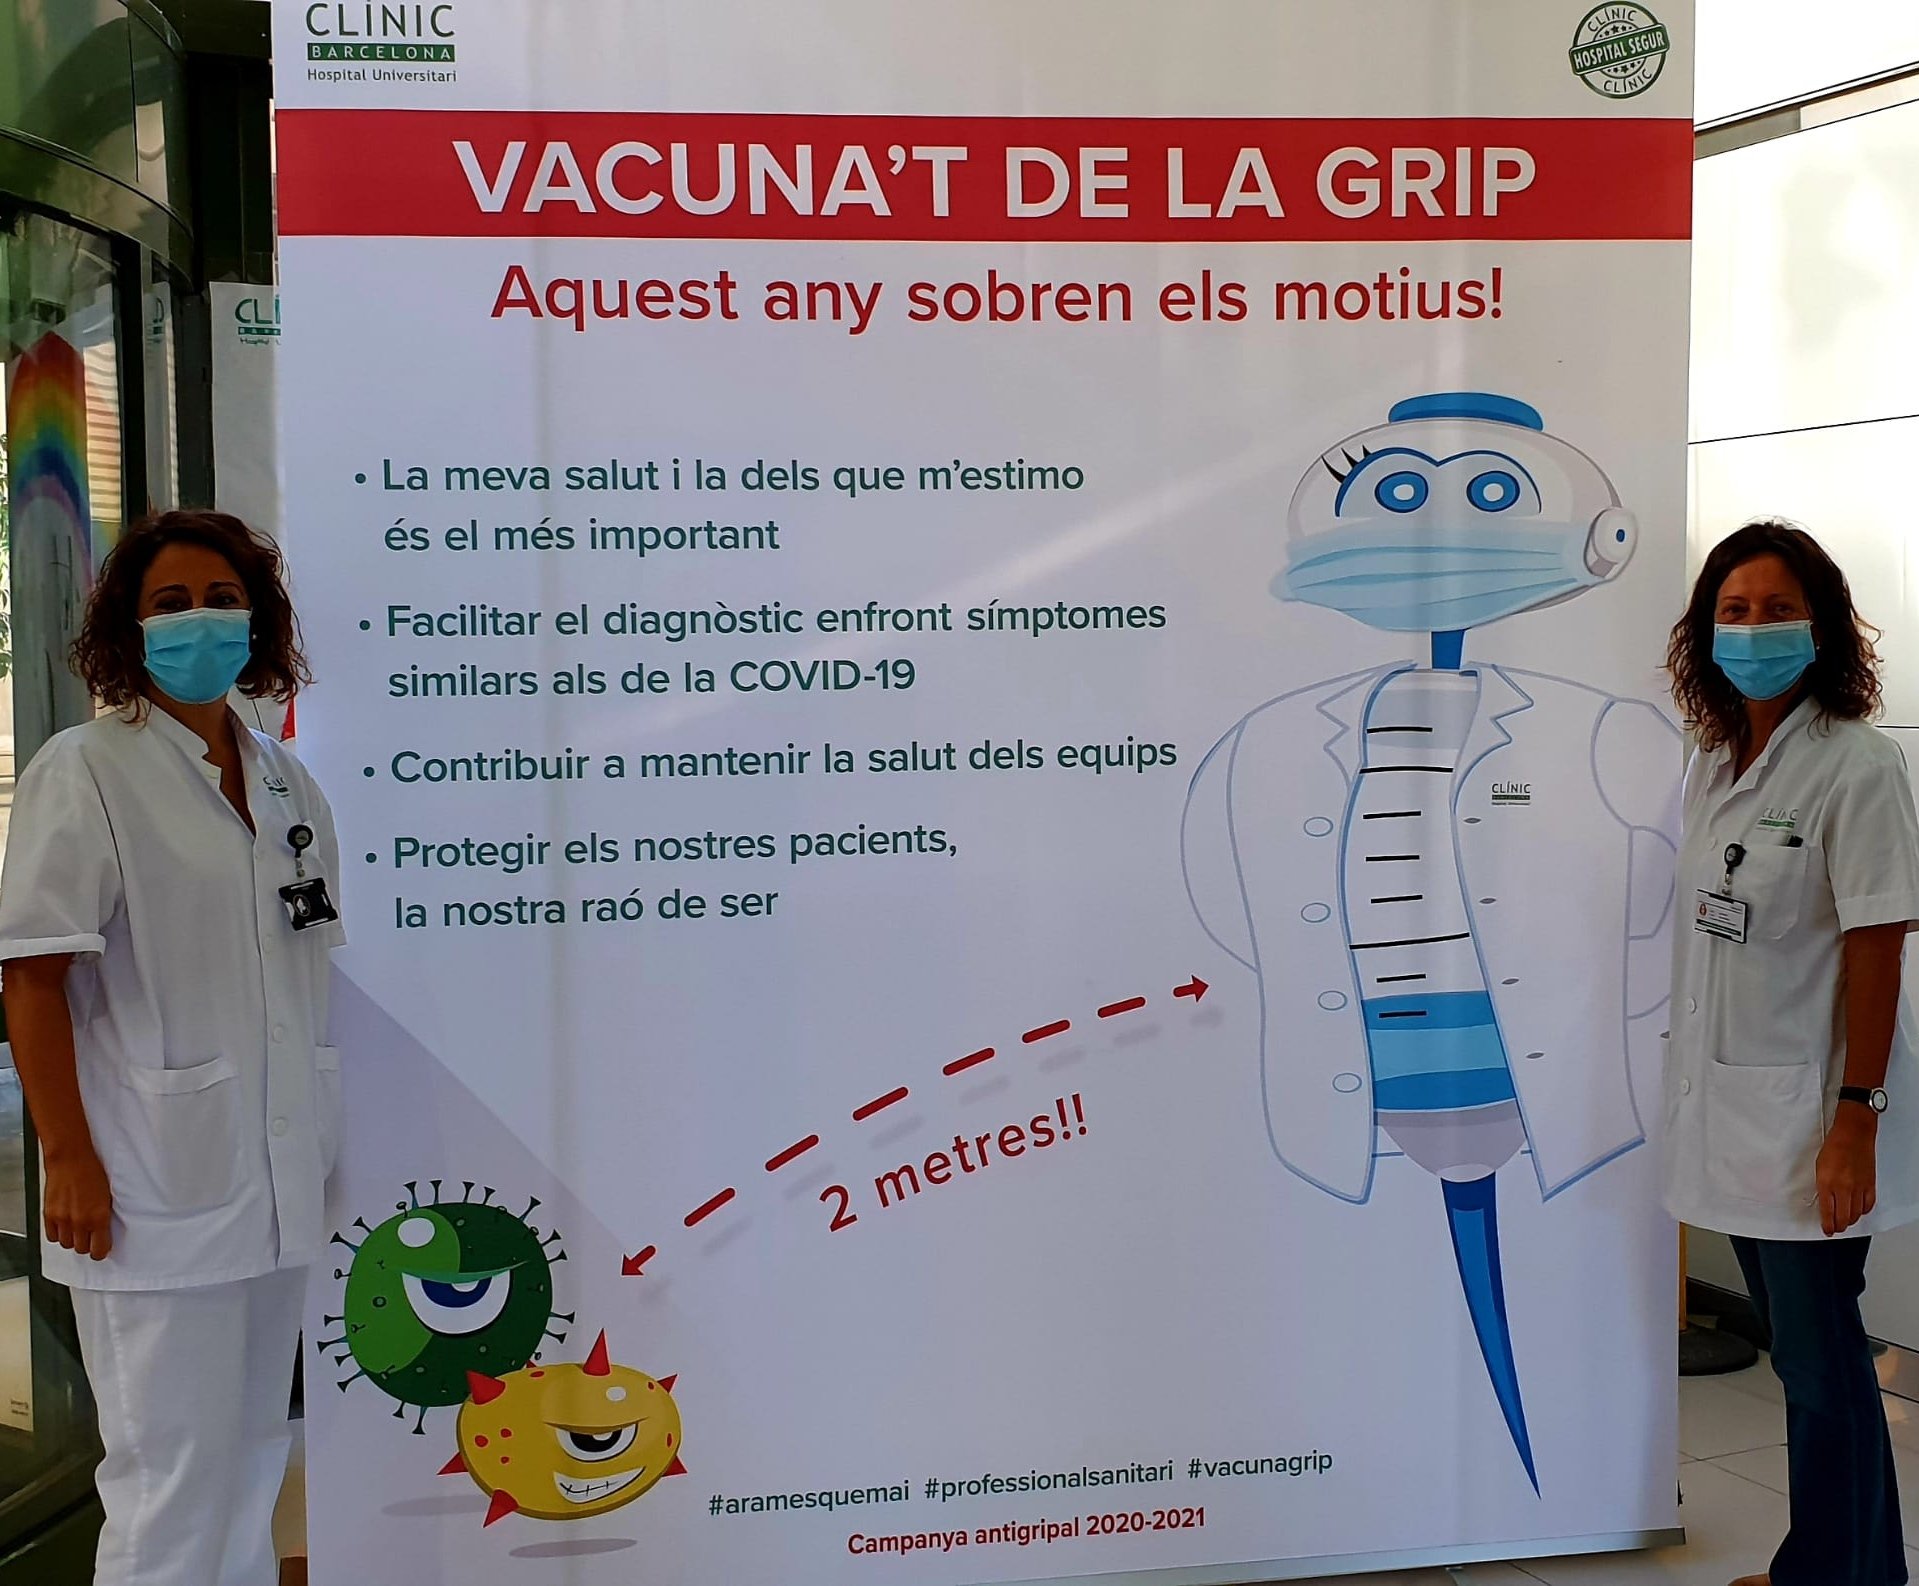 Sebastiana Quesada: “Els professionals de la salut han pres consciència sobre la responsabilitat de vacunar-se contra la grip”